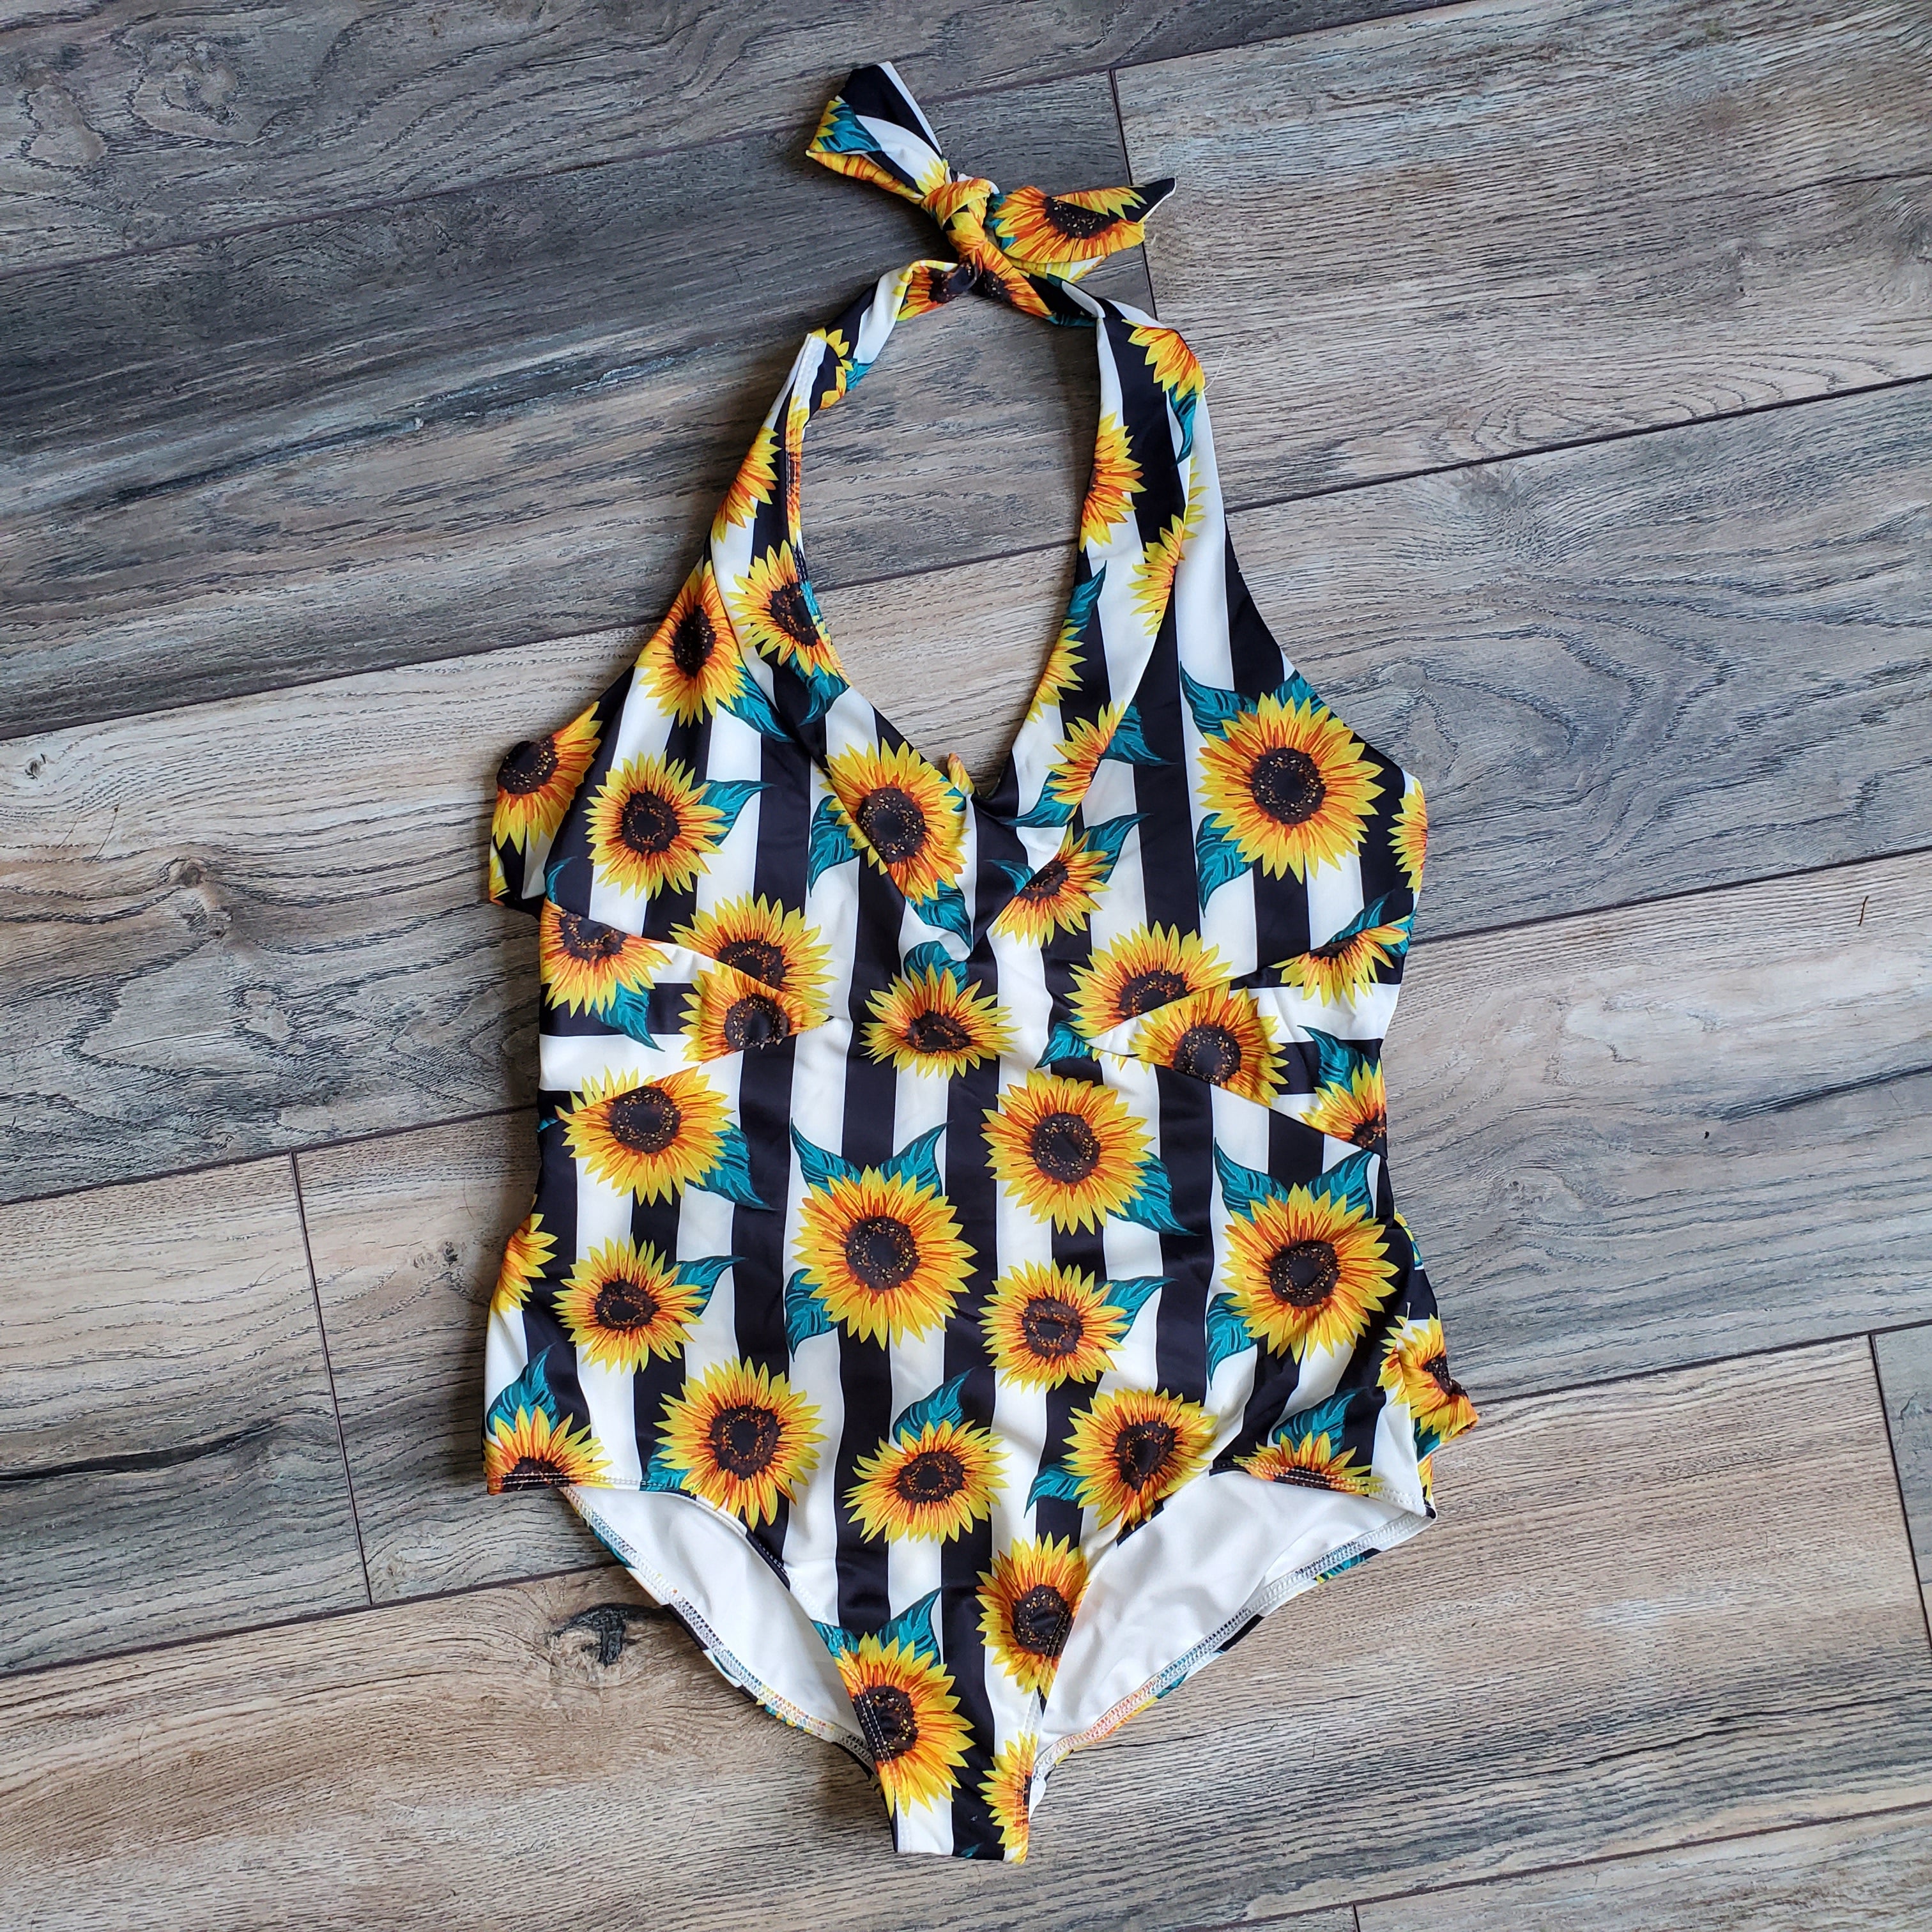 Sunbeams Tie Up * Sunflower Swimsuit